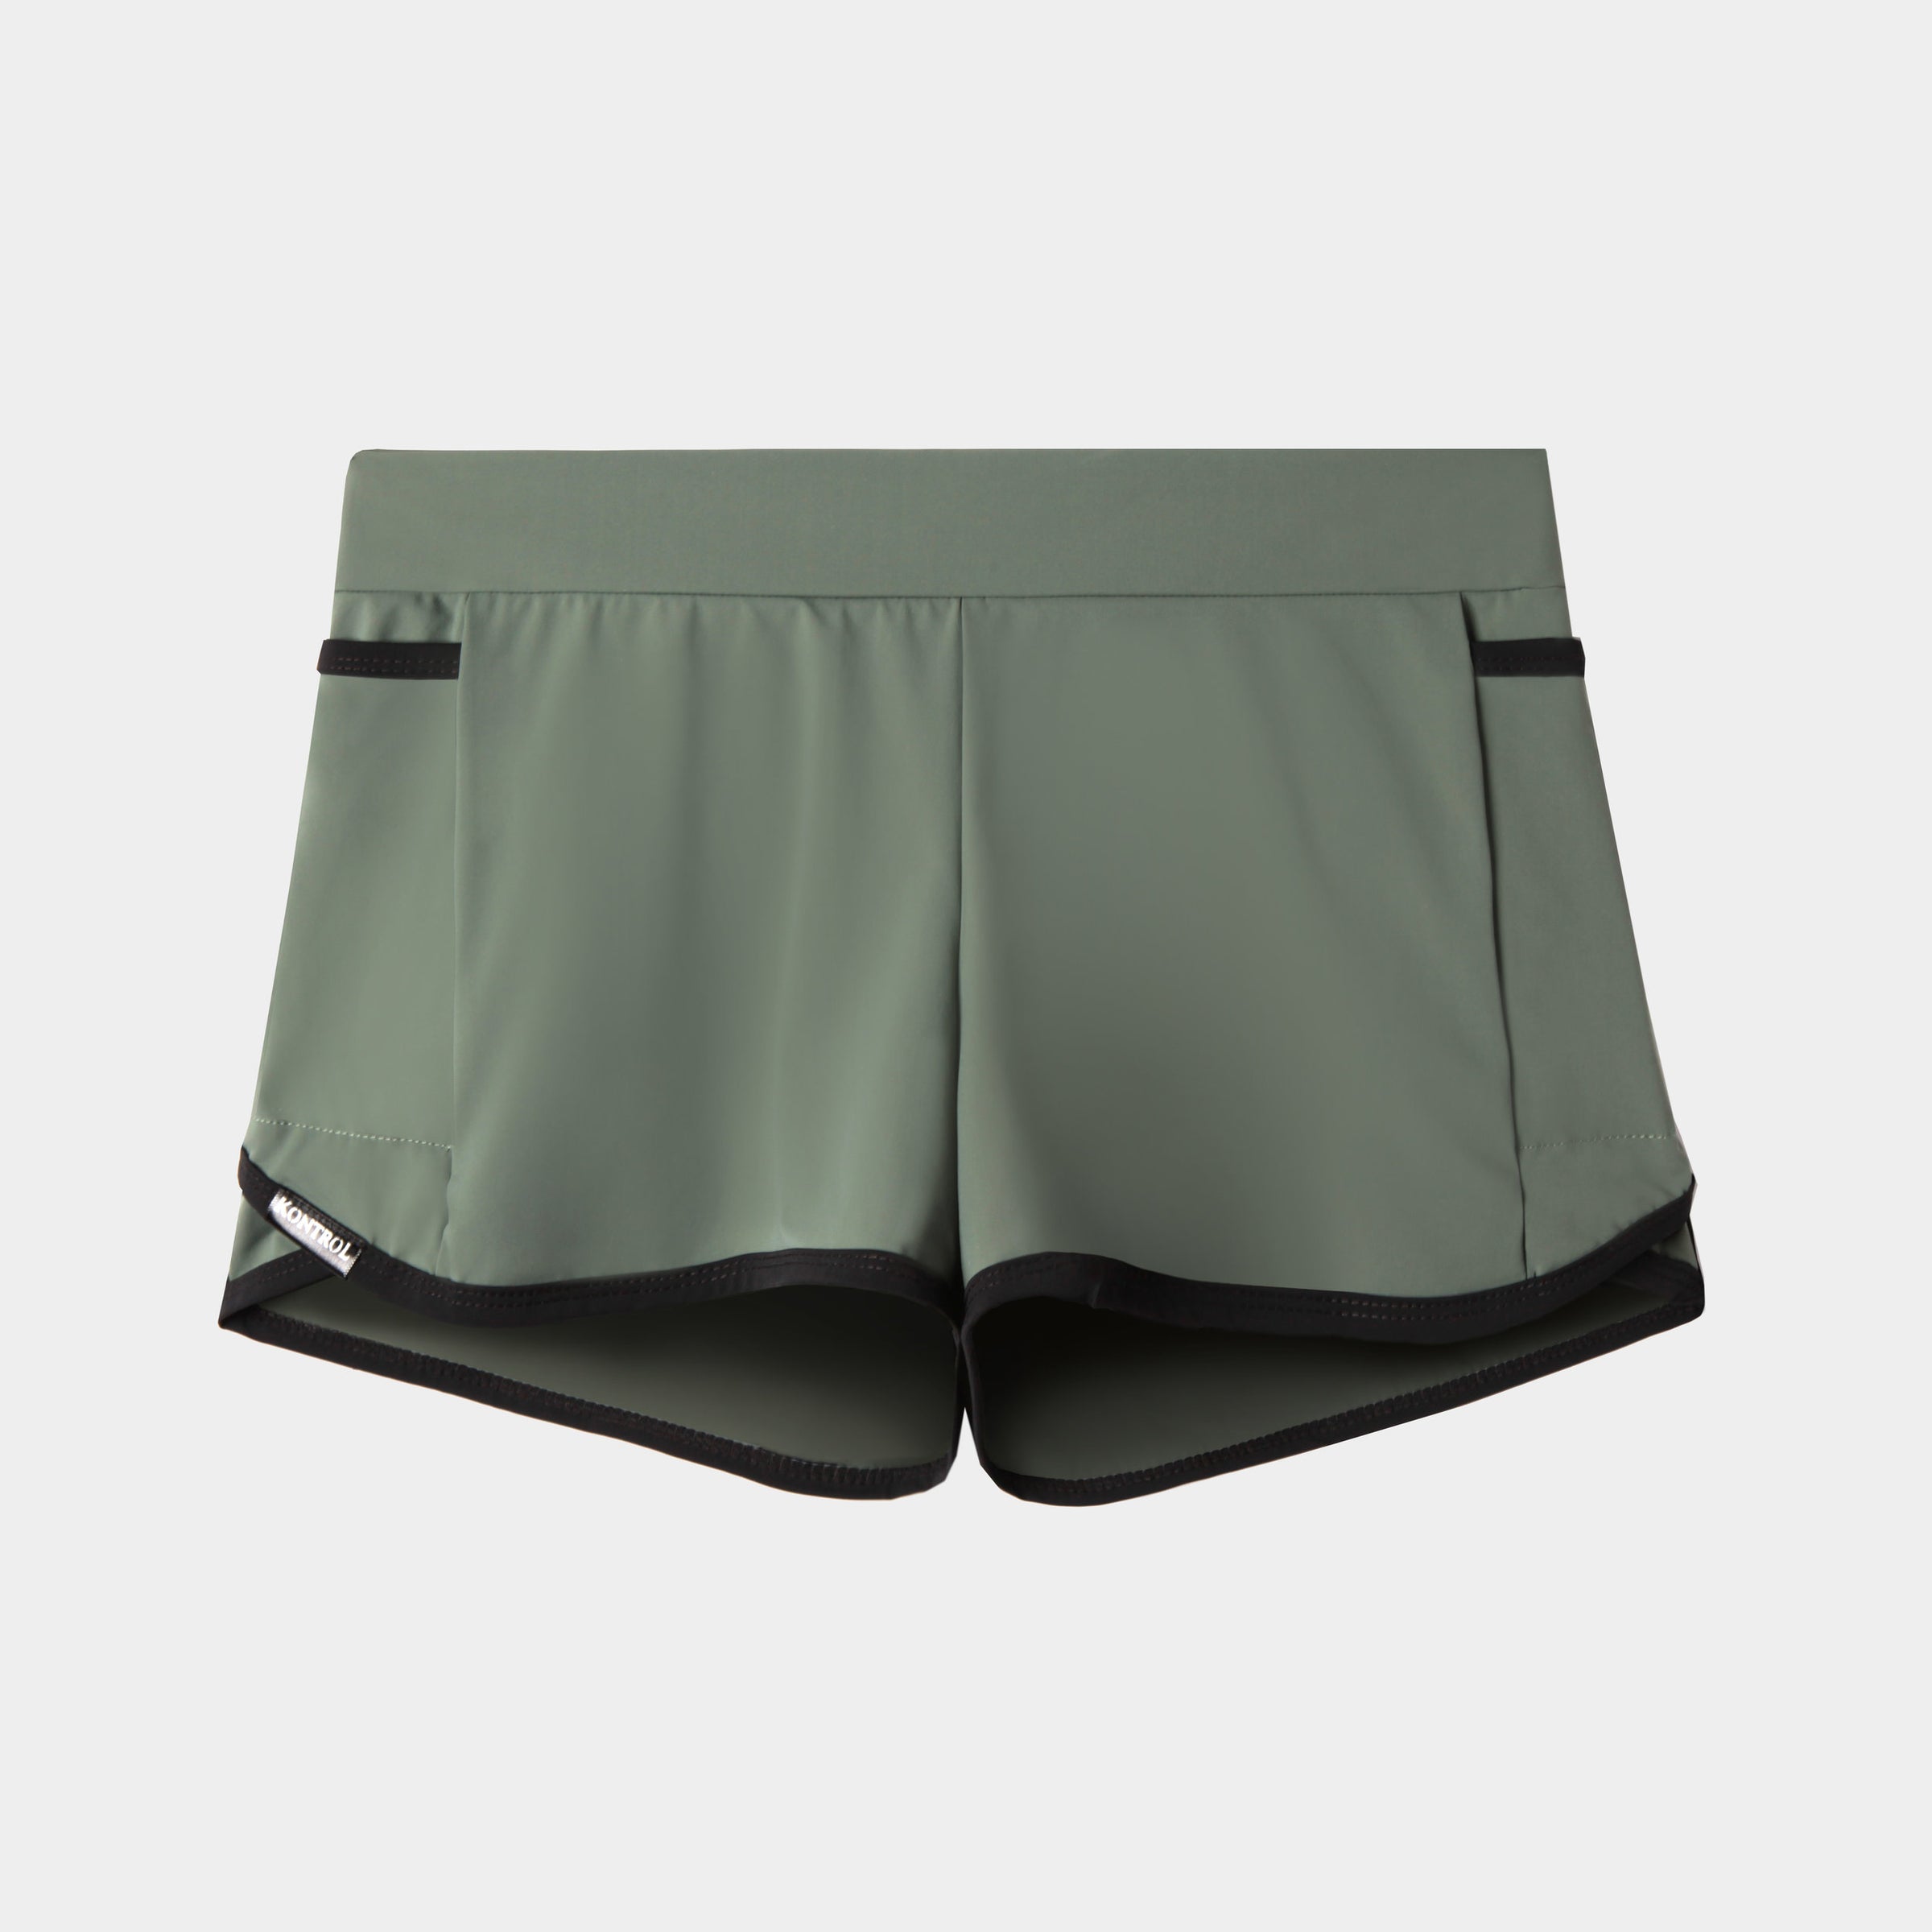 Active shorts – Design KontroL